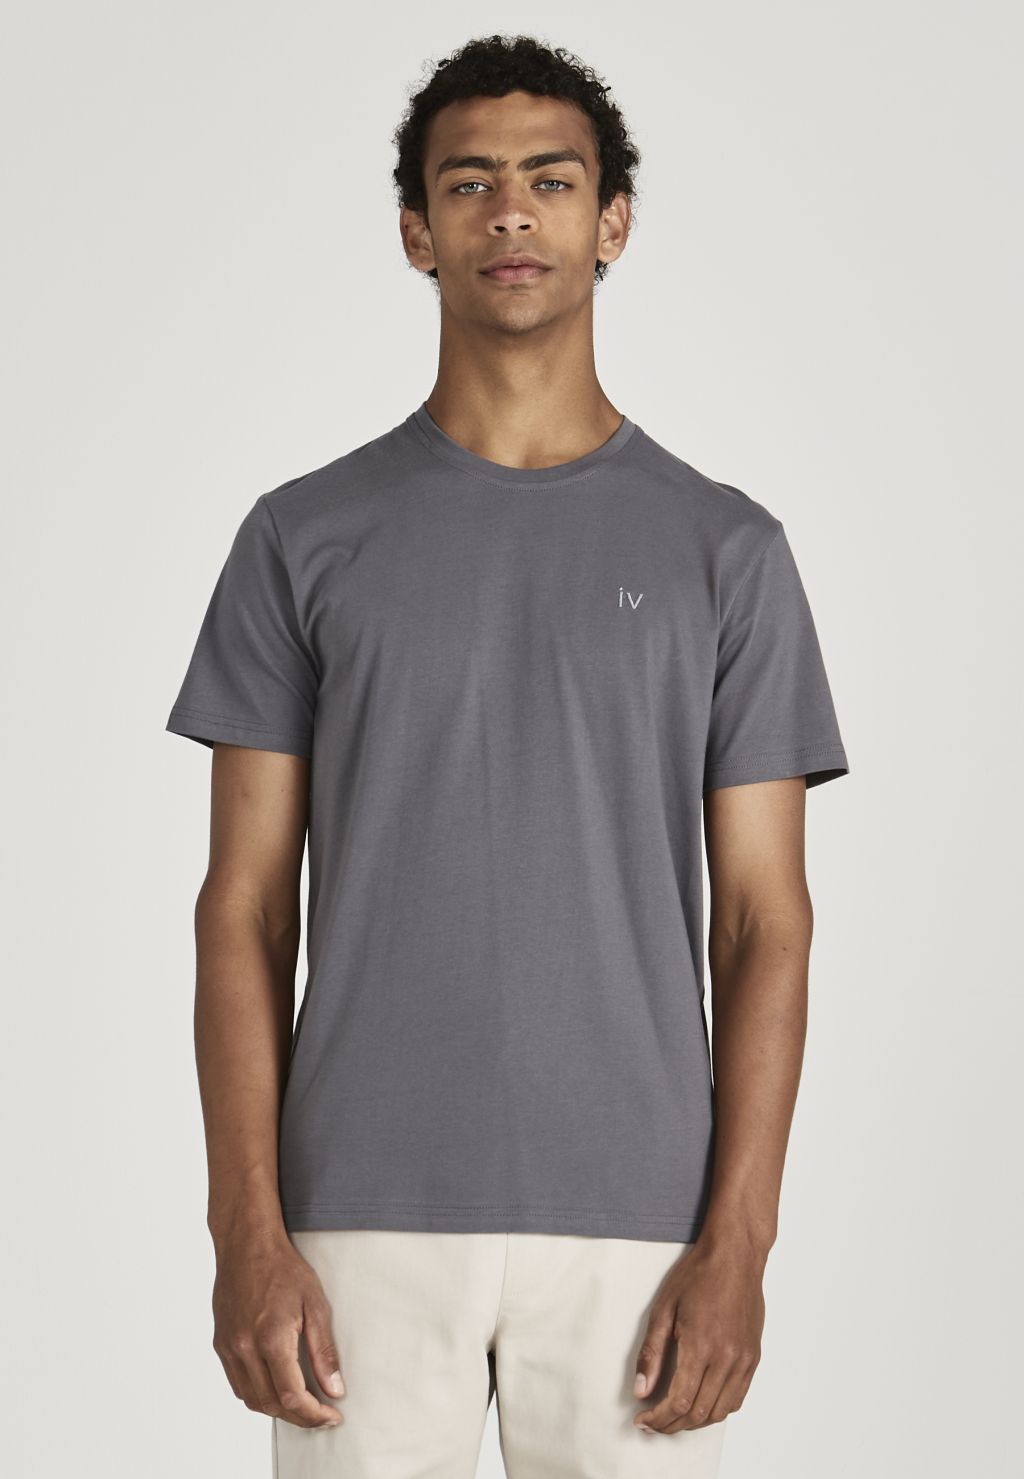 Colby (Iv) - T-Shirt - Bio-Baumwolle - Shadow Grey XL